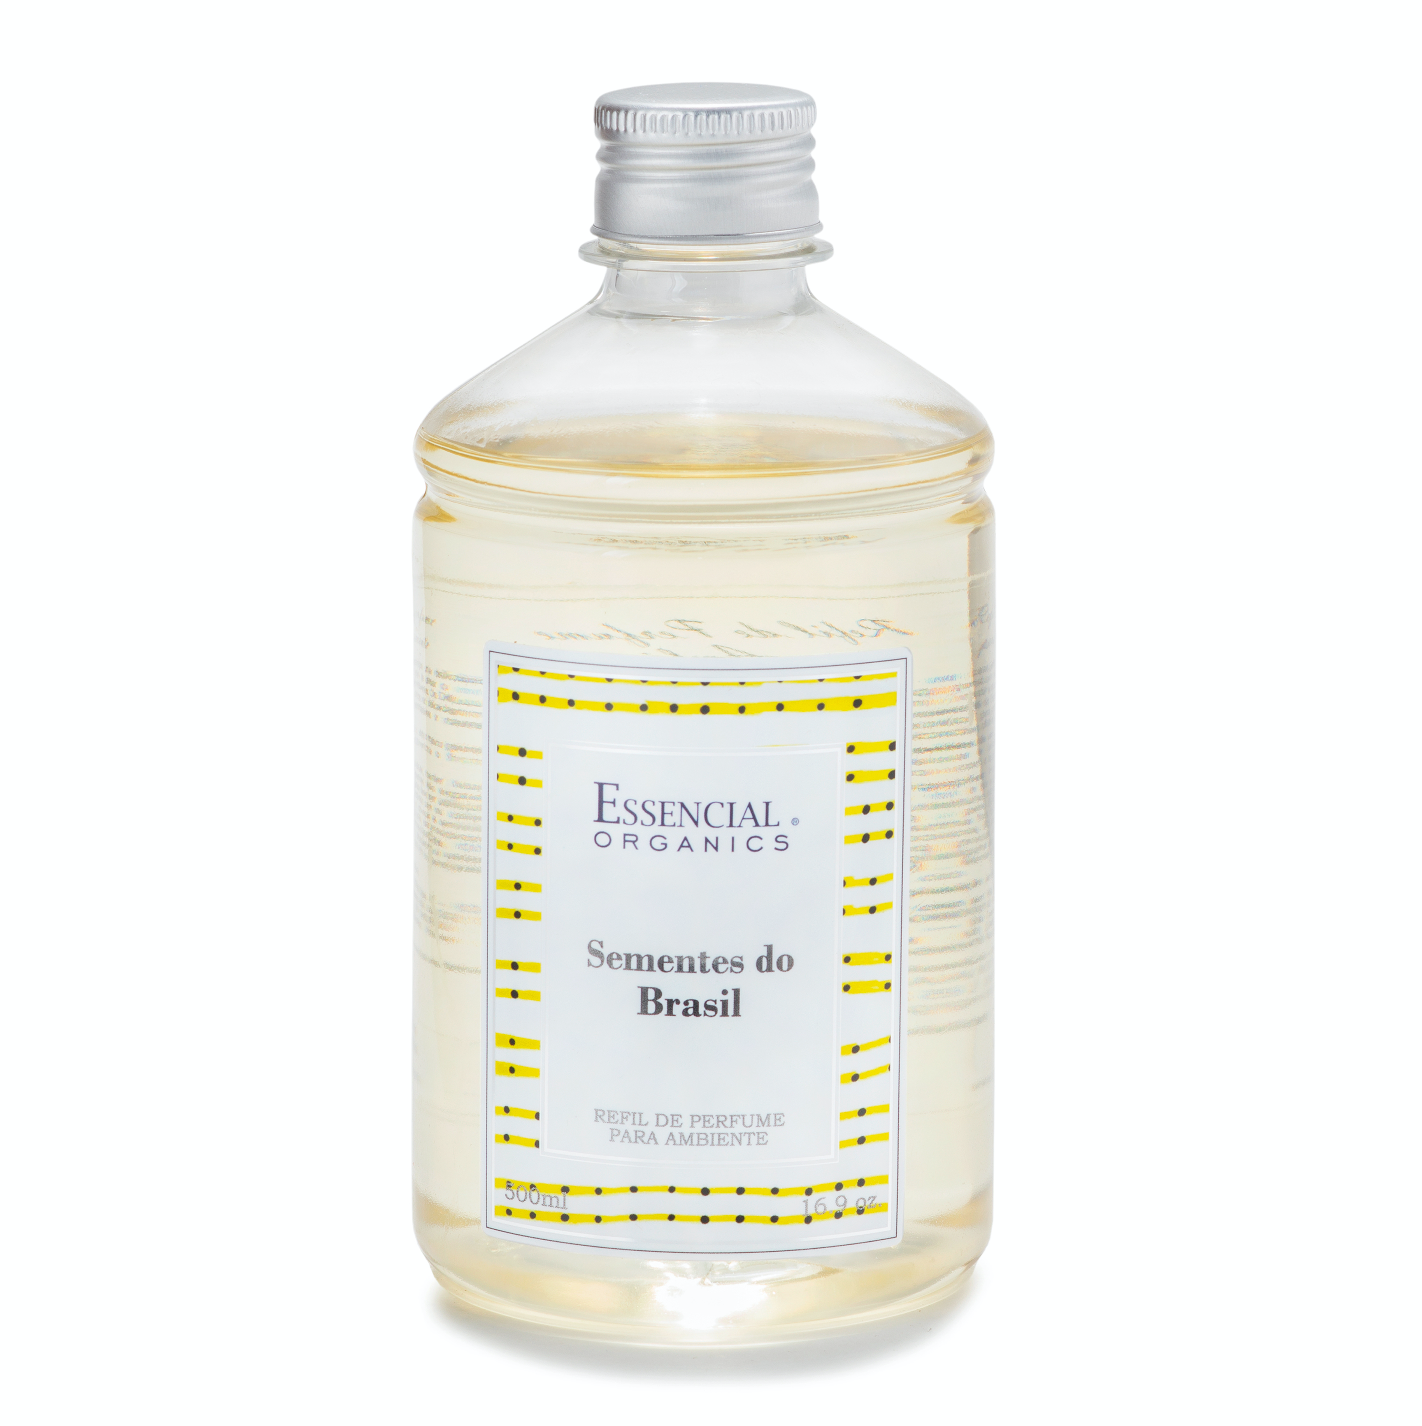 Refil de Perfume para Ambiente Sementes do Brasil 500ml - Essencial Organics